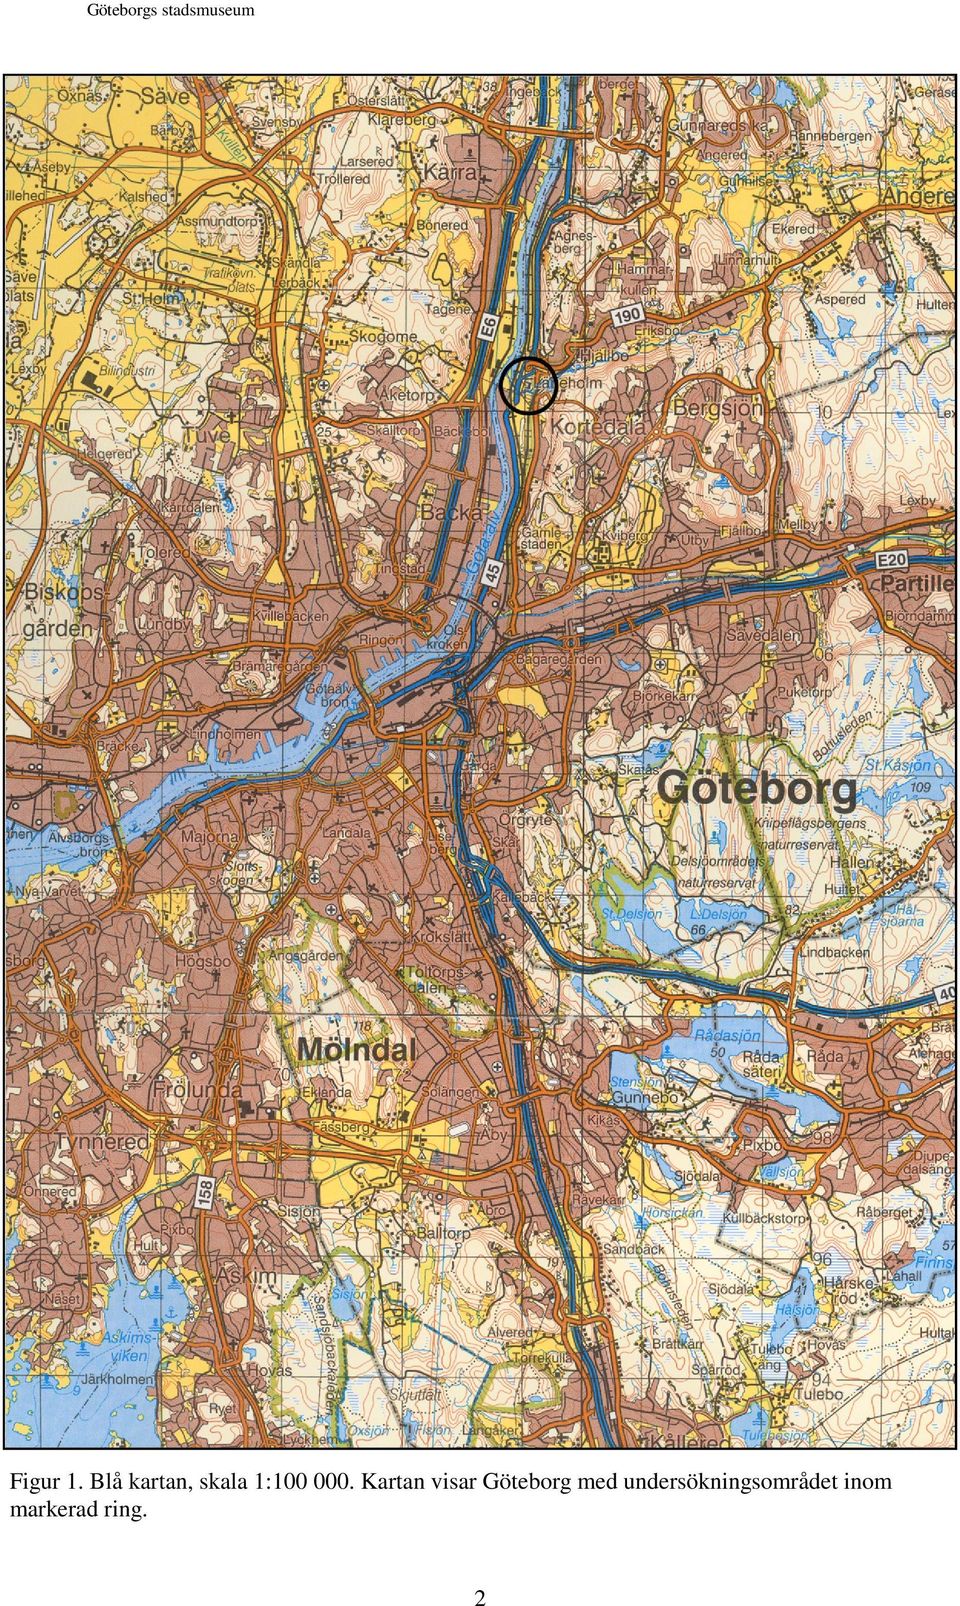 Kartan visar Göteborg med